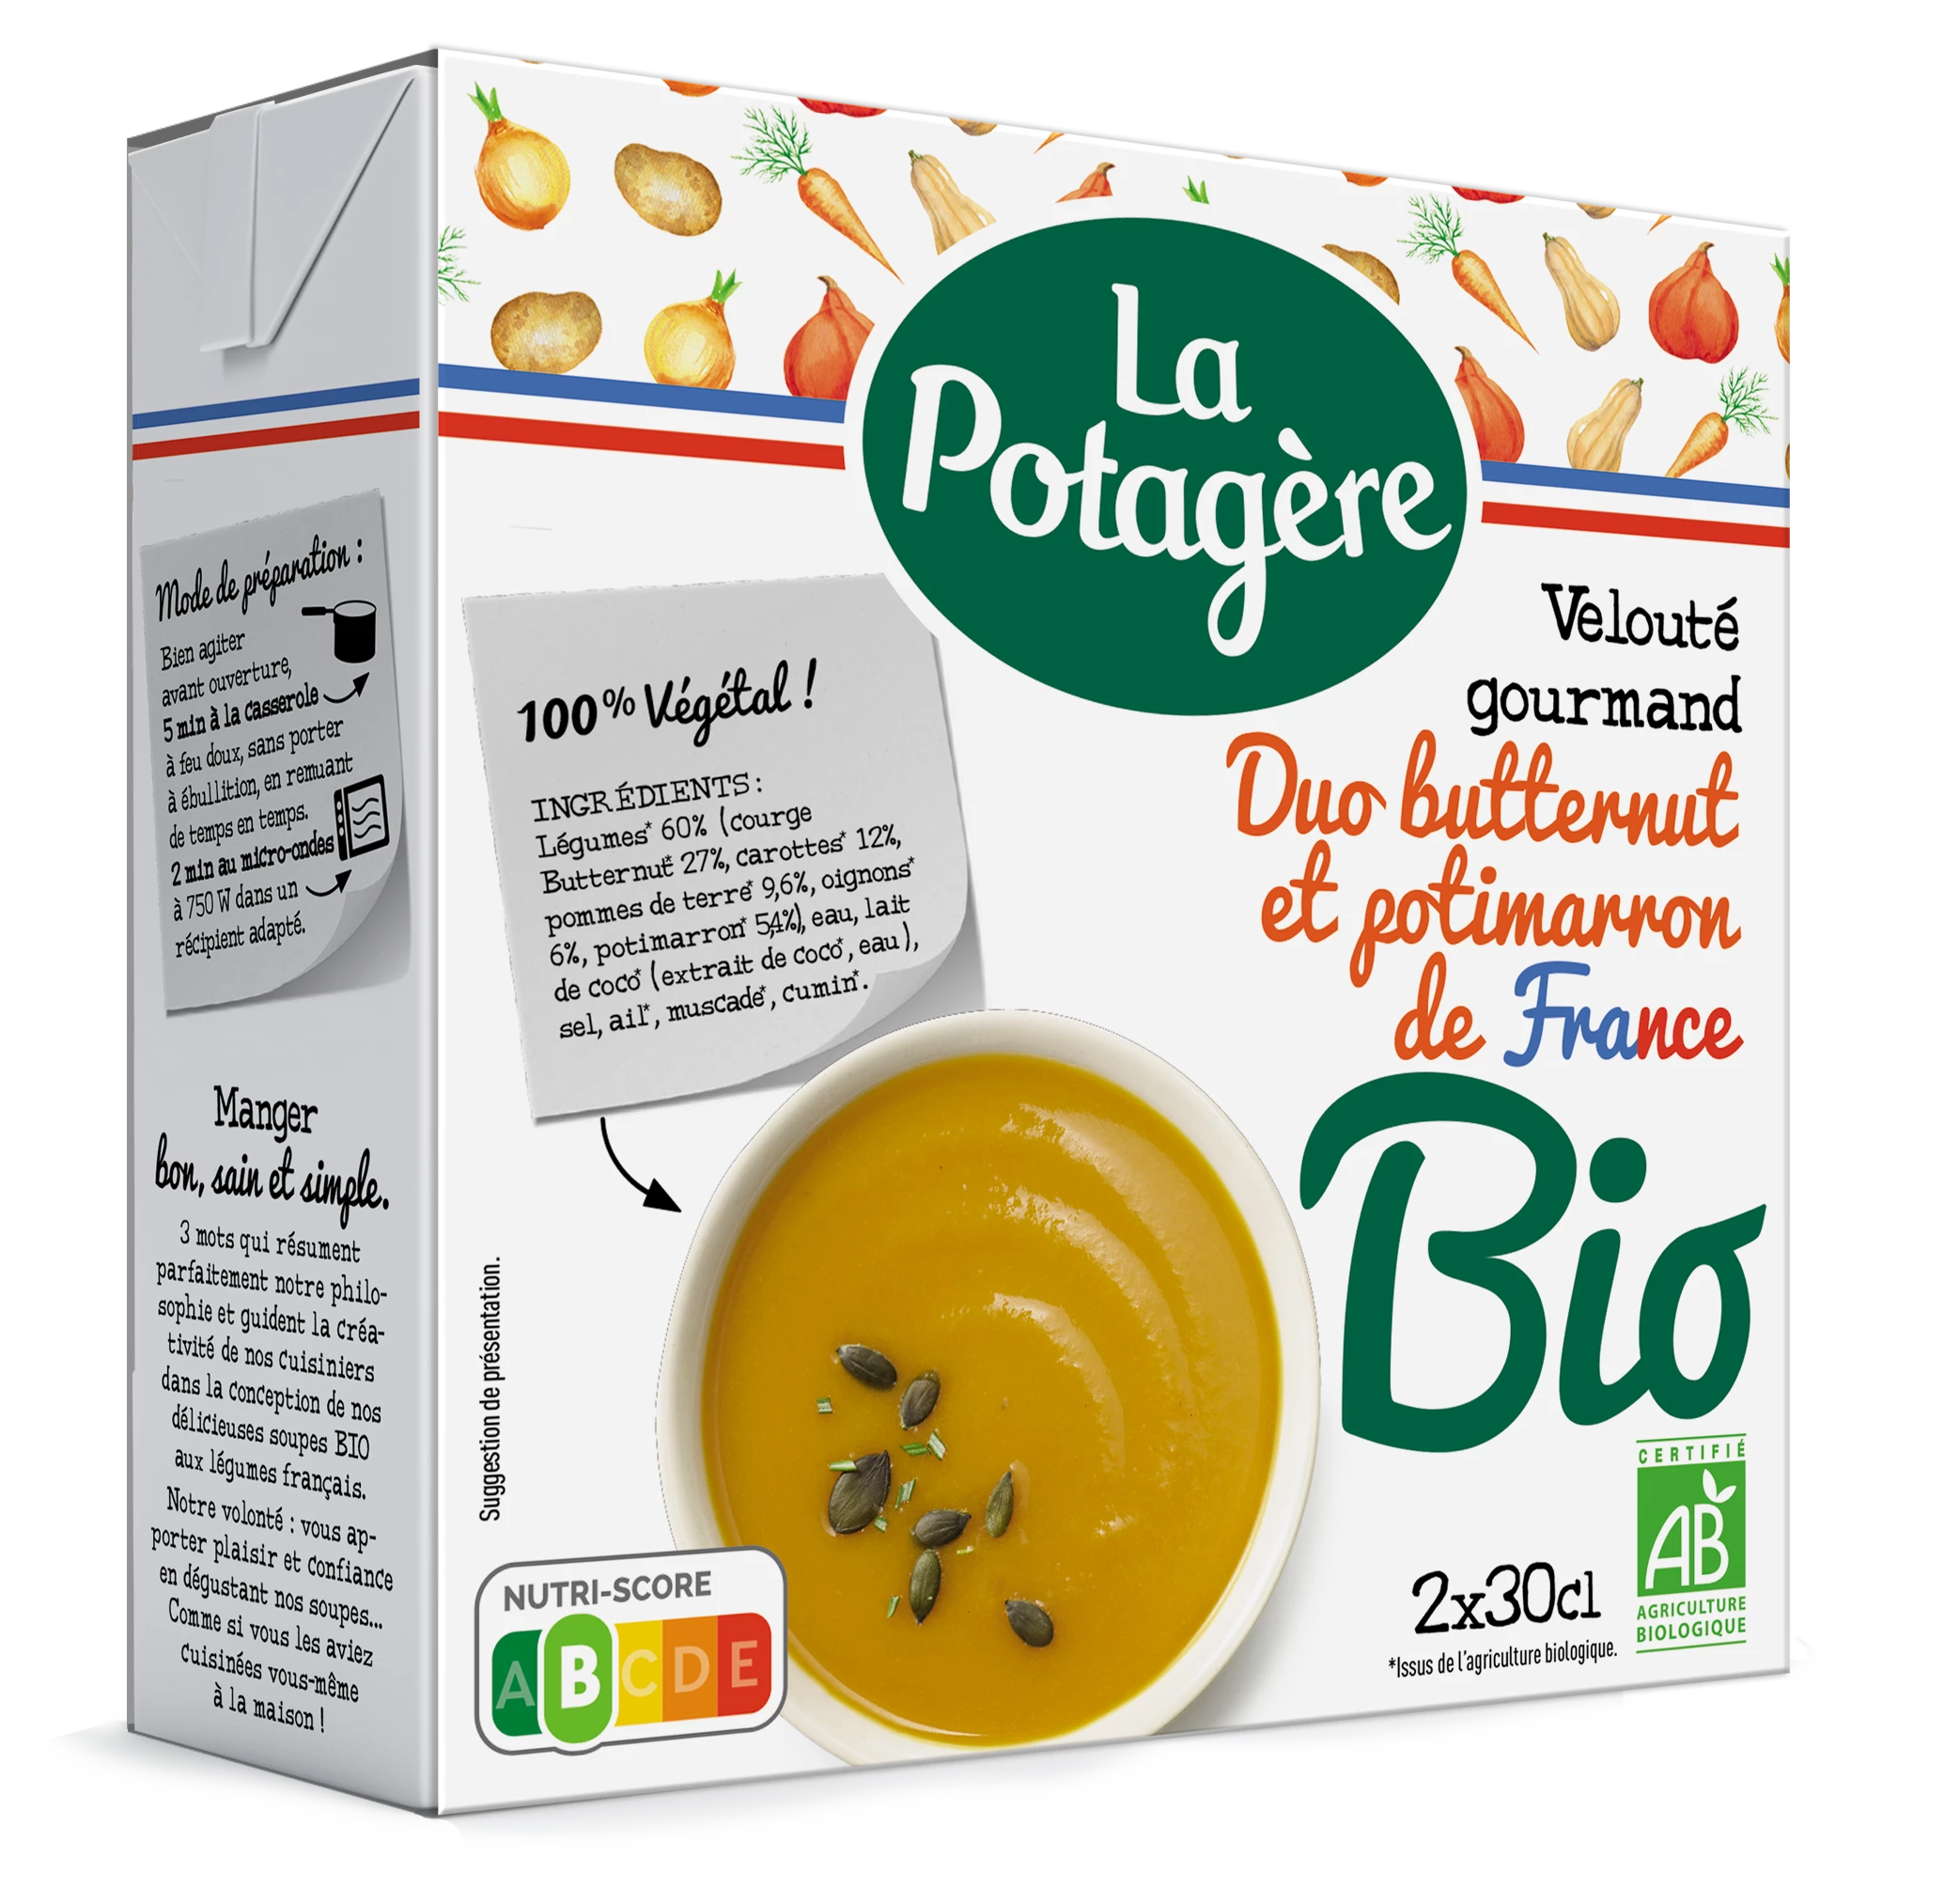 Velouté gourmand, duo de butternut et potimarron de France Bio, 2x30cl, LA POTAGERE